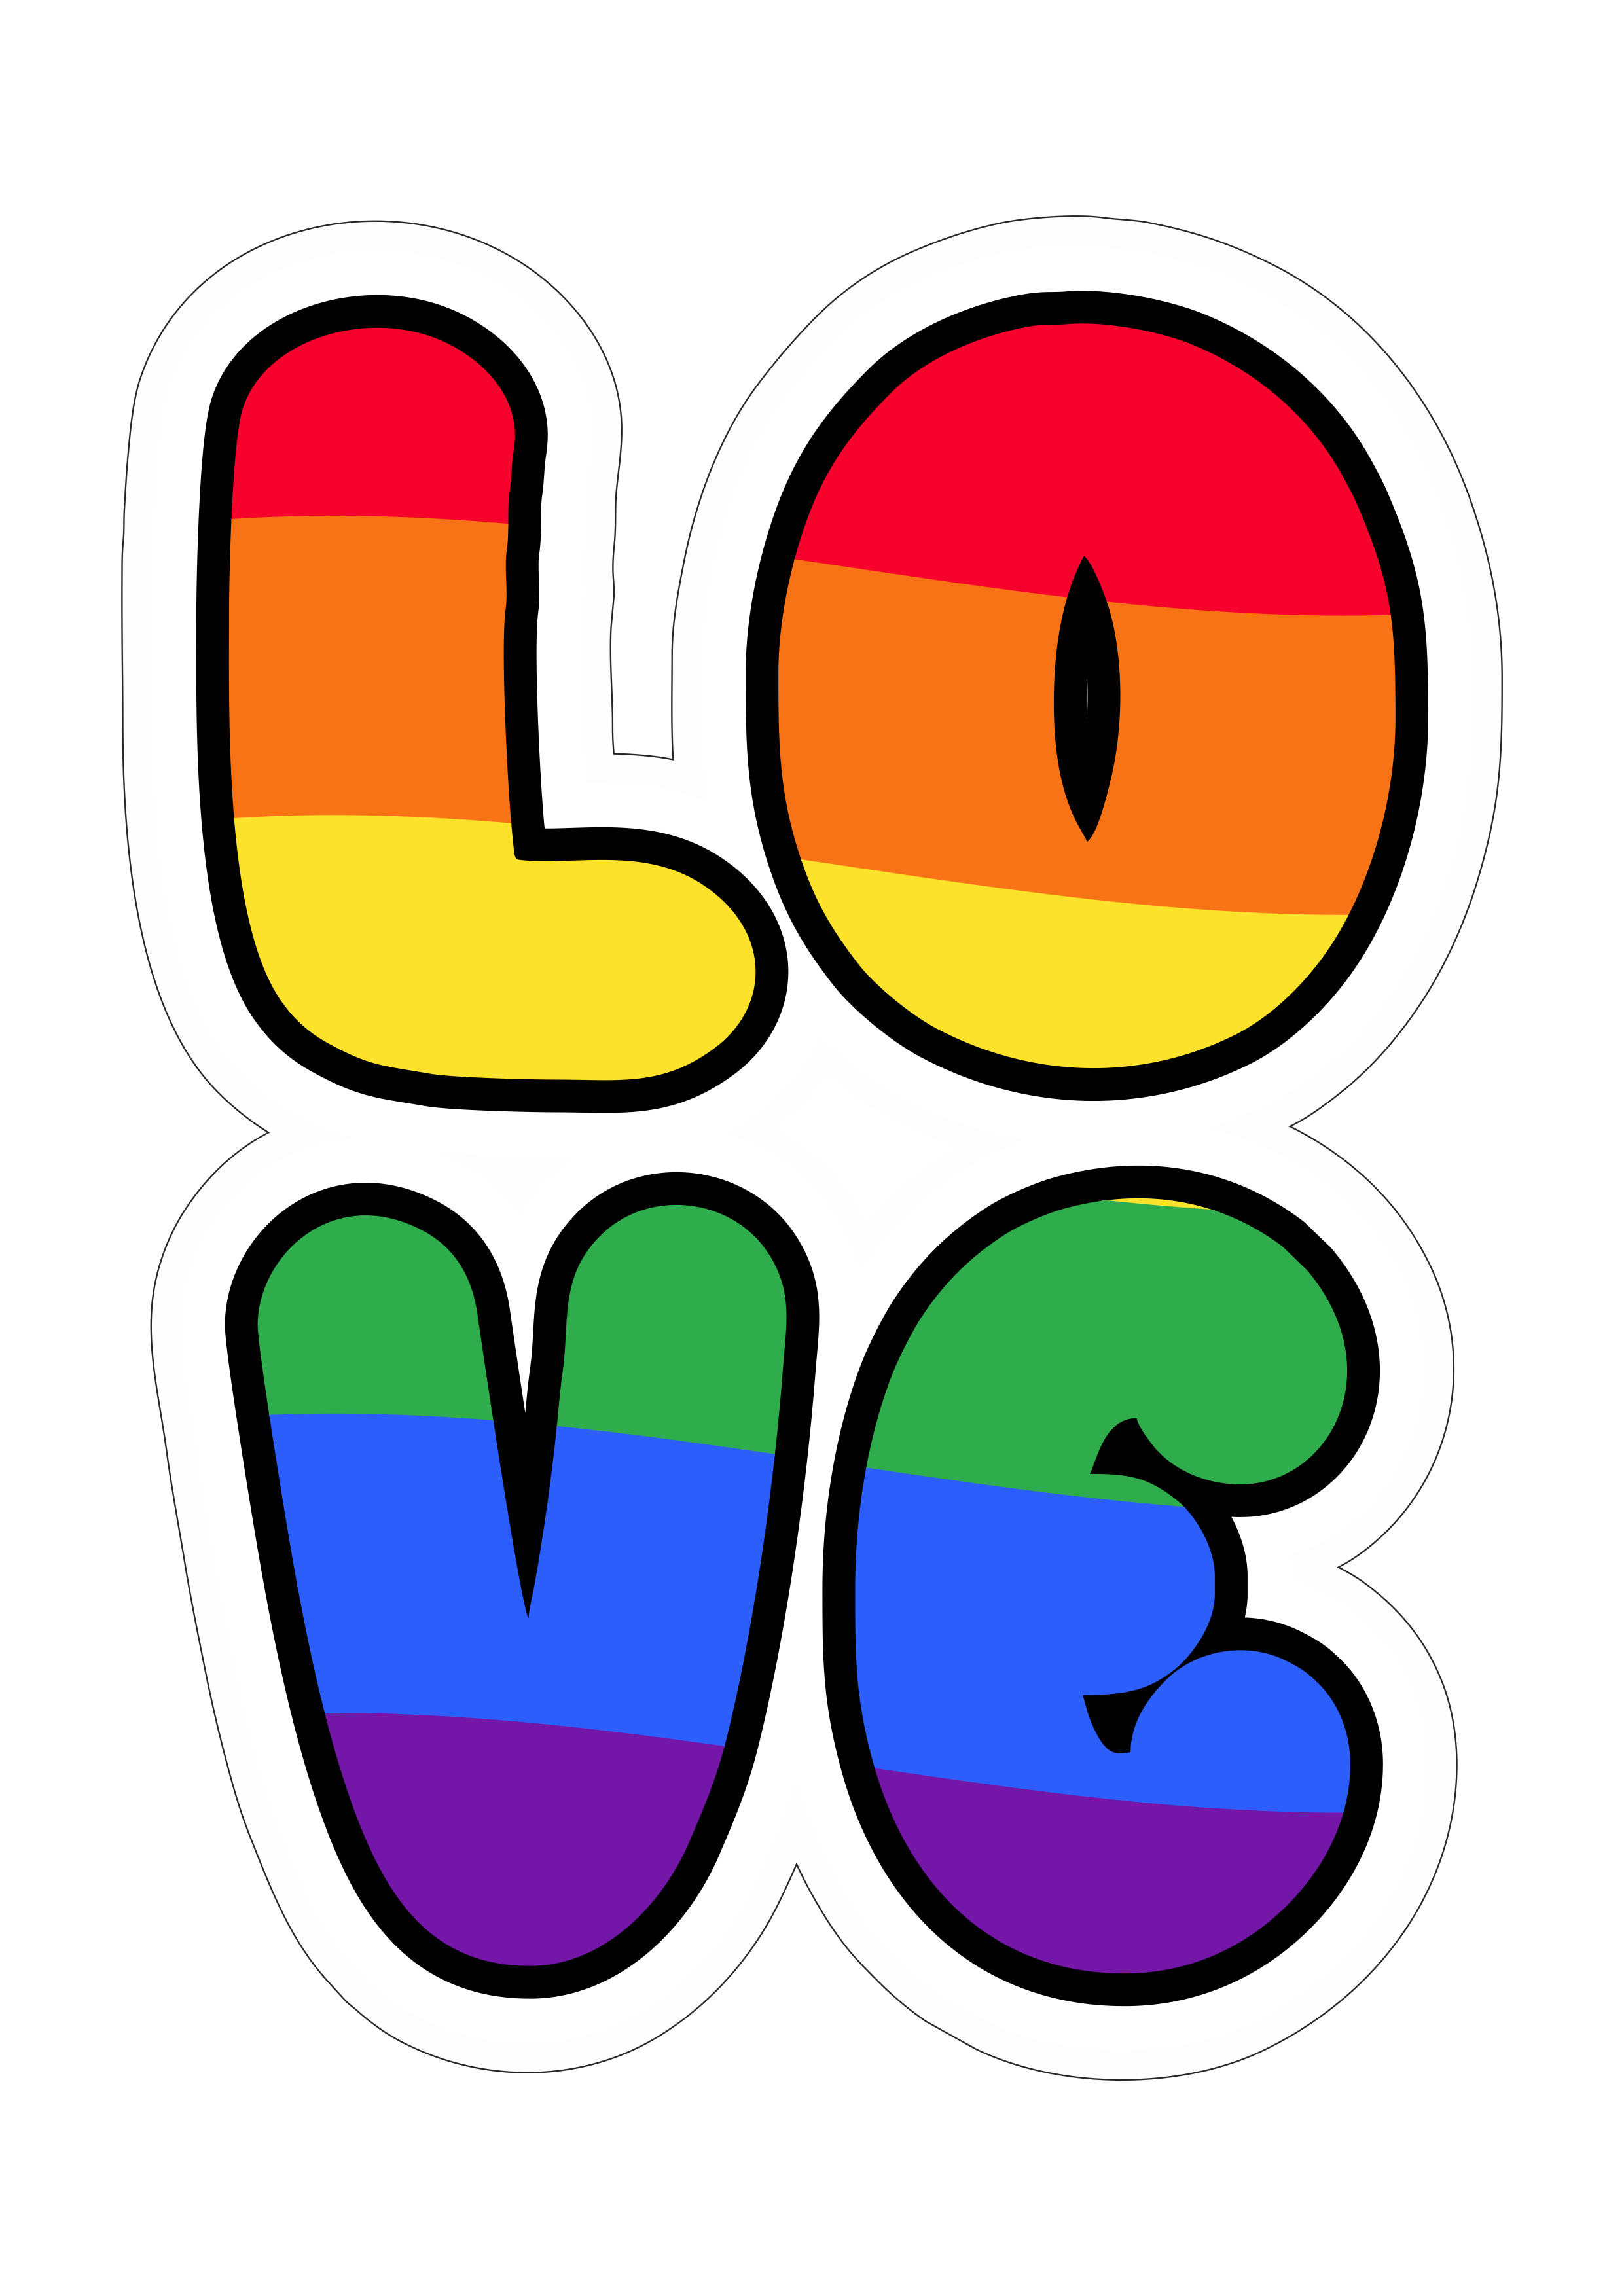 Baixar imagem fundo transparente love colorido bandeira LGBT png